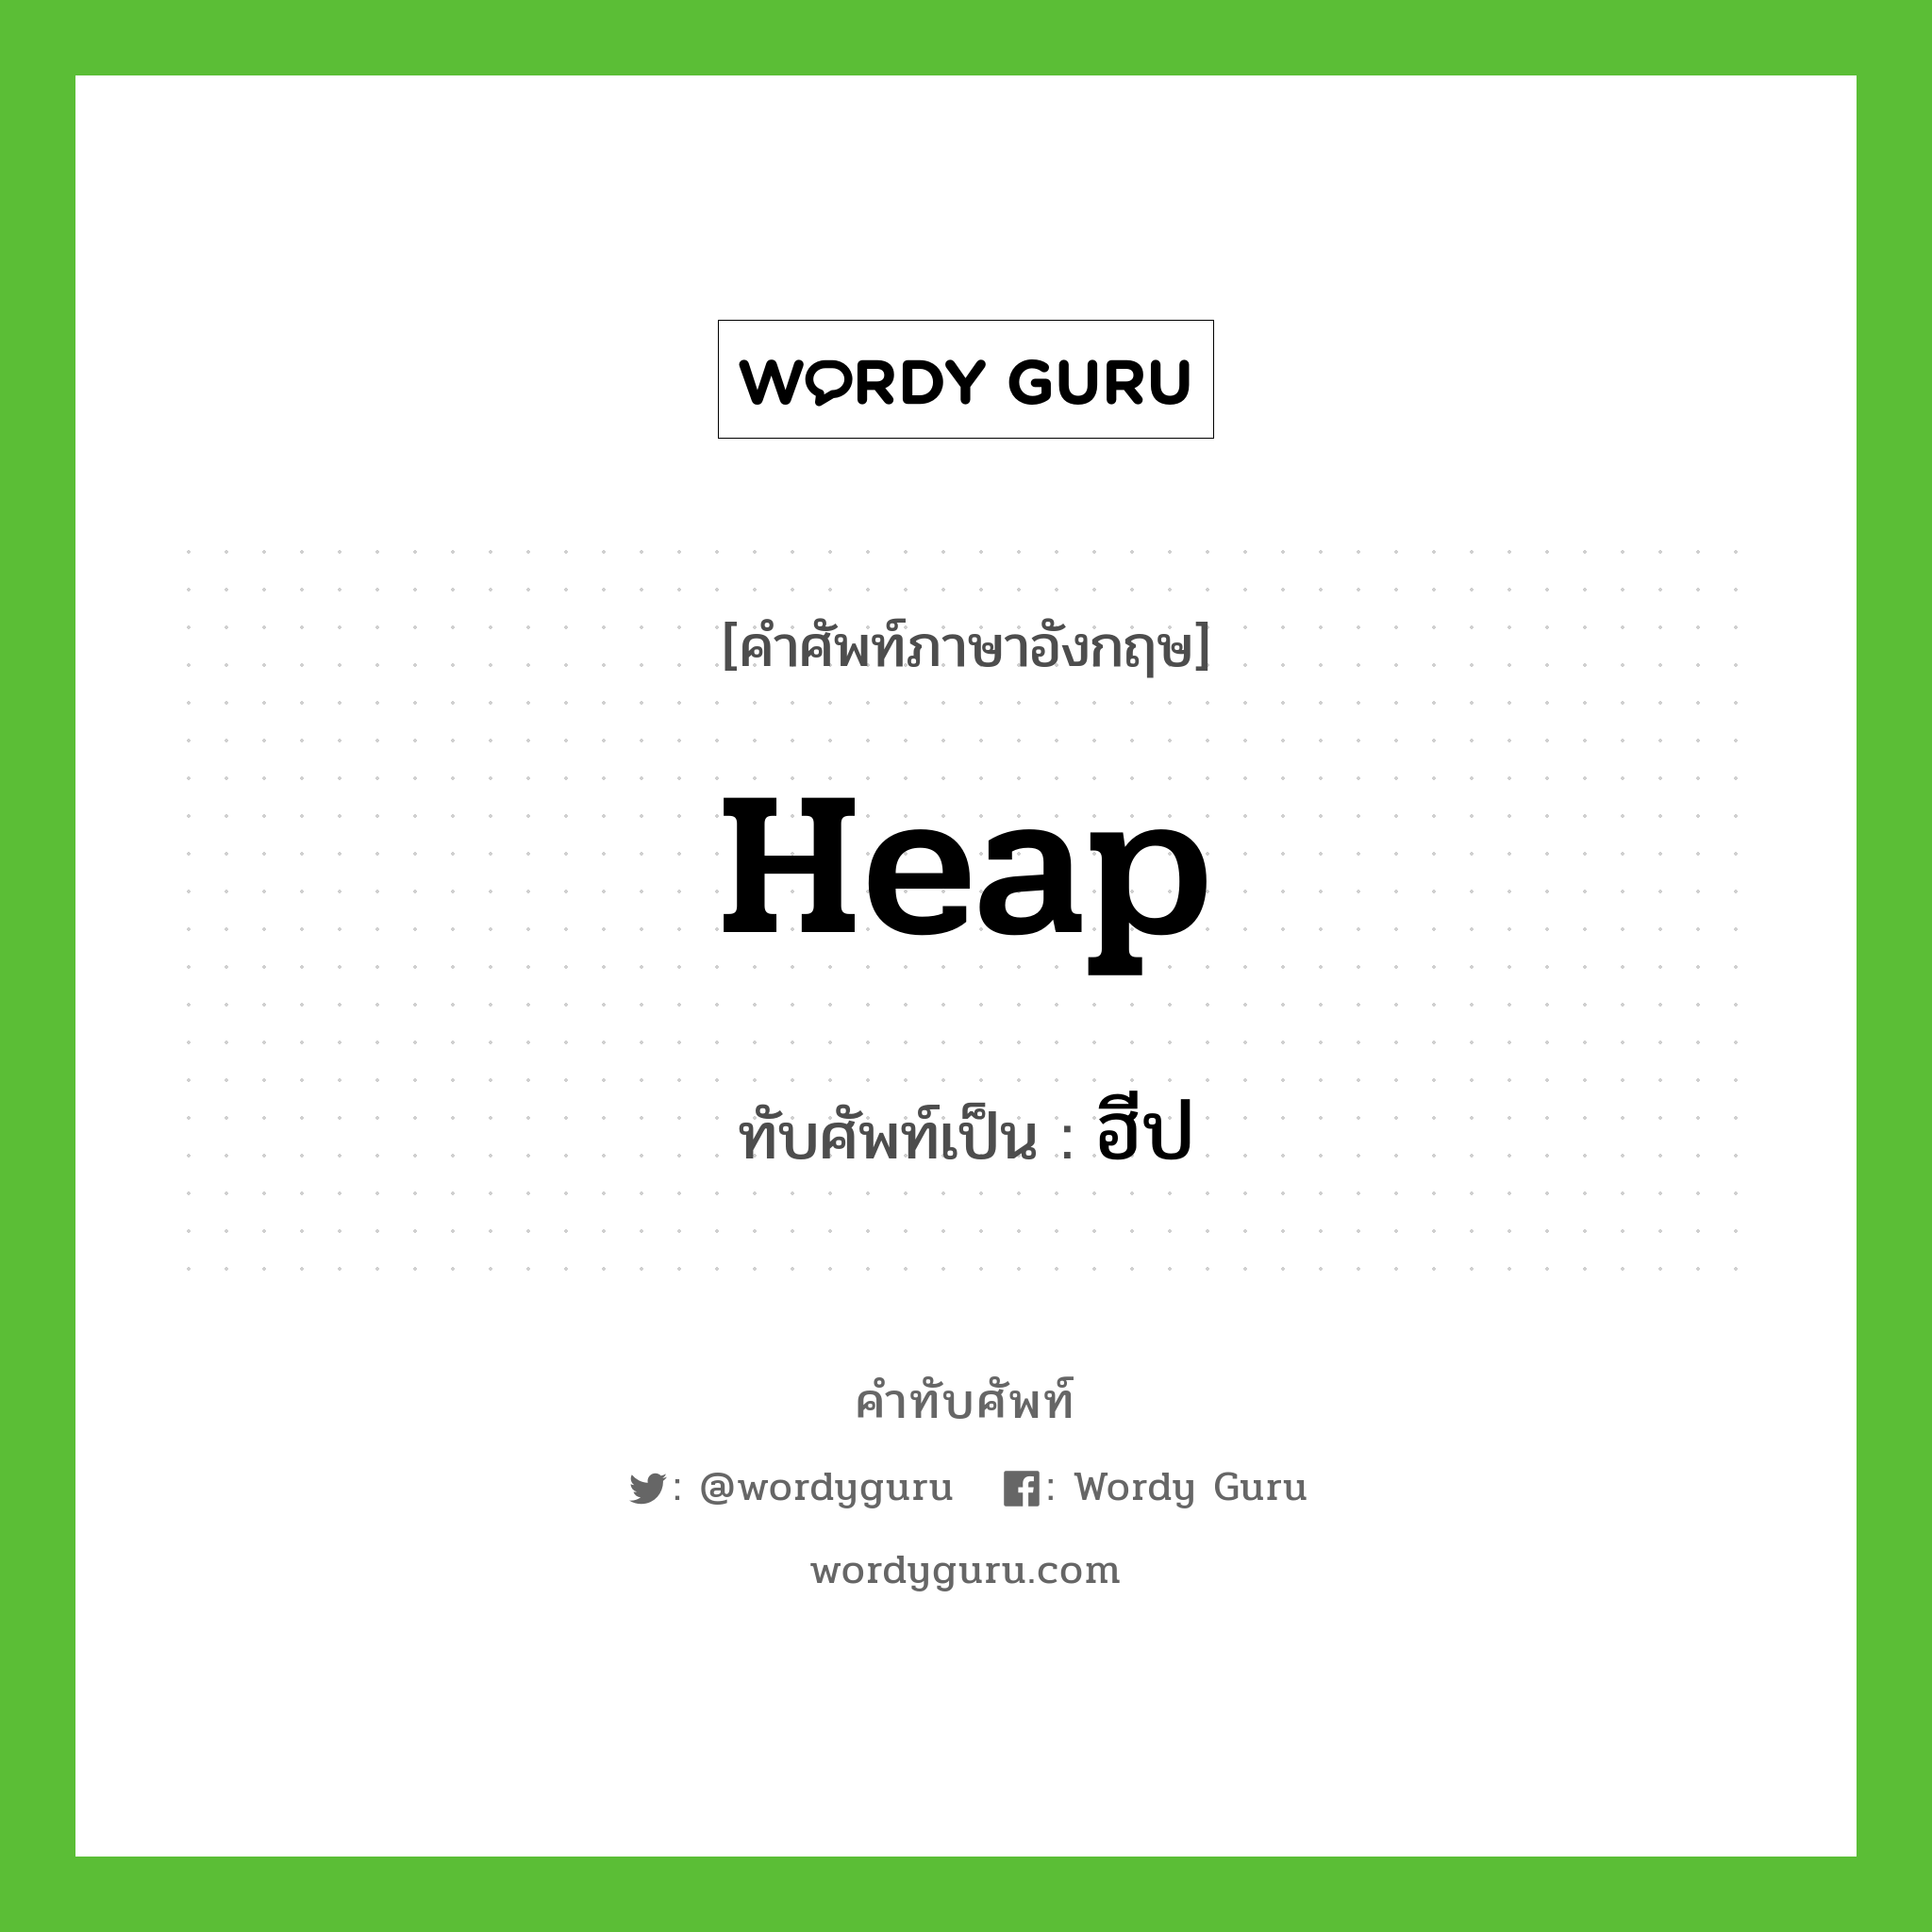 heap เขียนเป็นคำไทยว่าอะไร?, คำศัพท์ภาษาอังกฤษ heap ทับศัพท์เป็น ฮีป